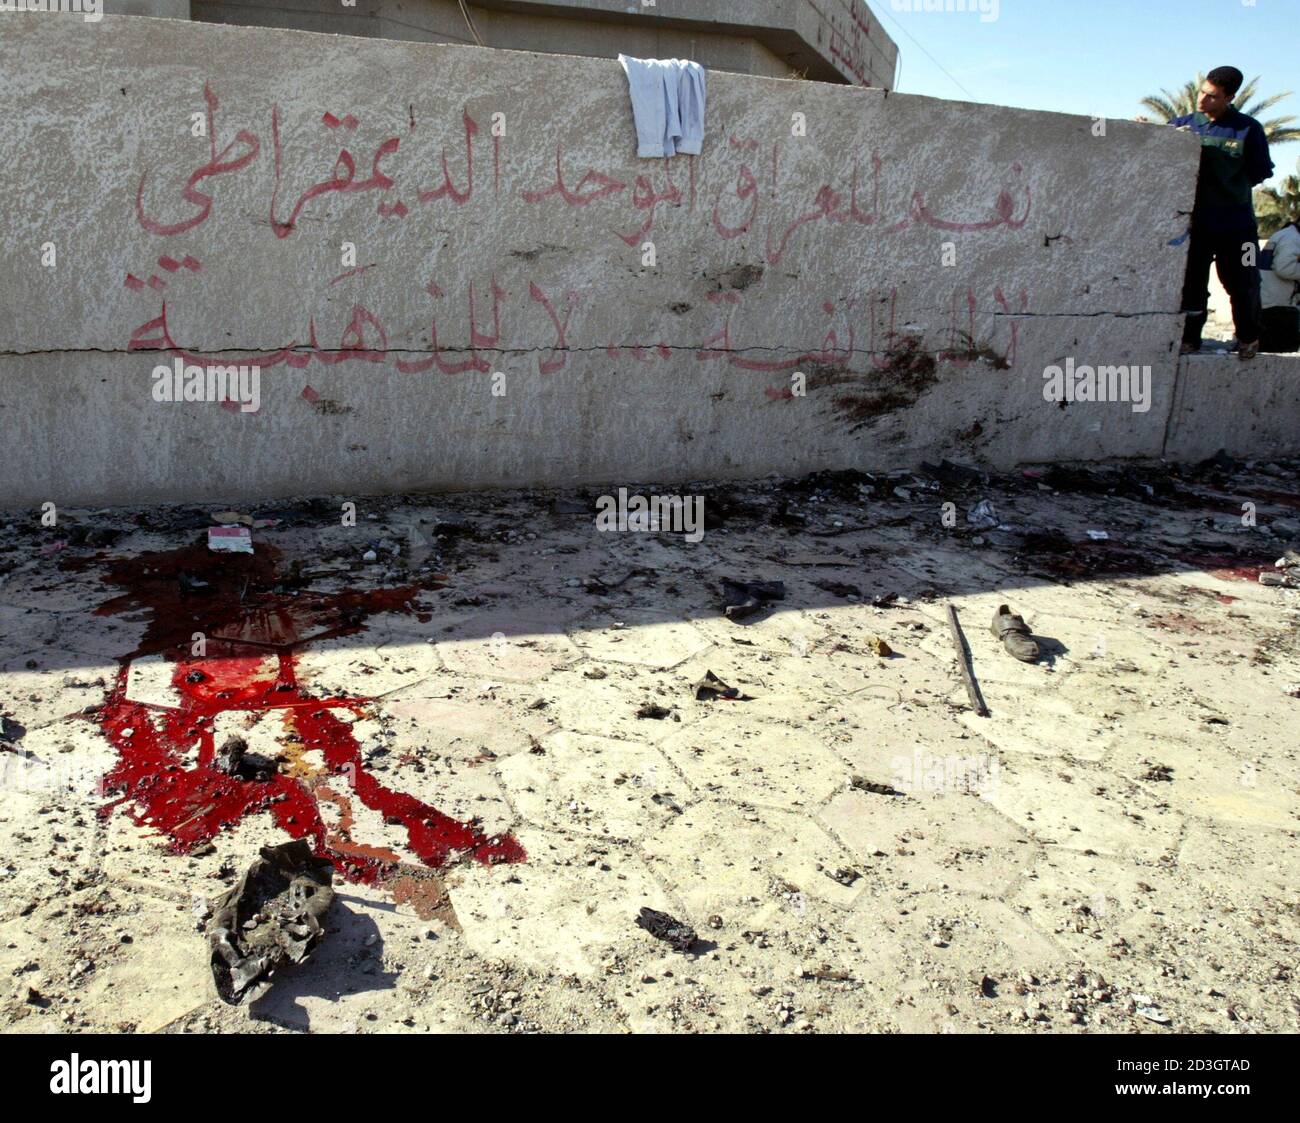 Ein irakischer Mann schaut einer Blutlache neben Graffiti lesen "Ja zum irakischen Freiheit und Demokratie" in Khalidiyah, 60 km (35 Meilen) westlich von Bagdad nach eine Autobombe durch eine Polizeistation 14. Dezember 2003 zerrissen. Mindestens 17 Menschen starben in den neuesten Angriff auf die Kraft im Mittelpunkt Washingtons Pläne macht Iraker übergeben. Stockfoto